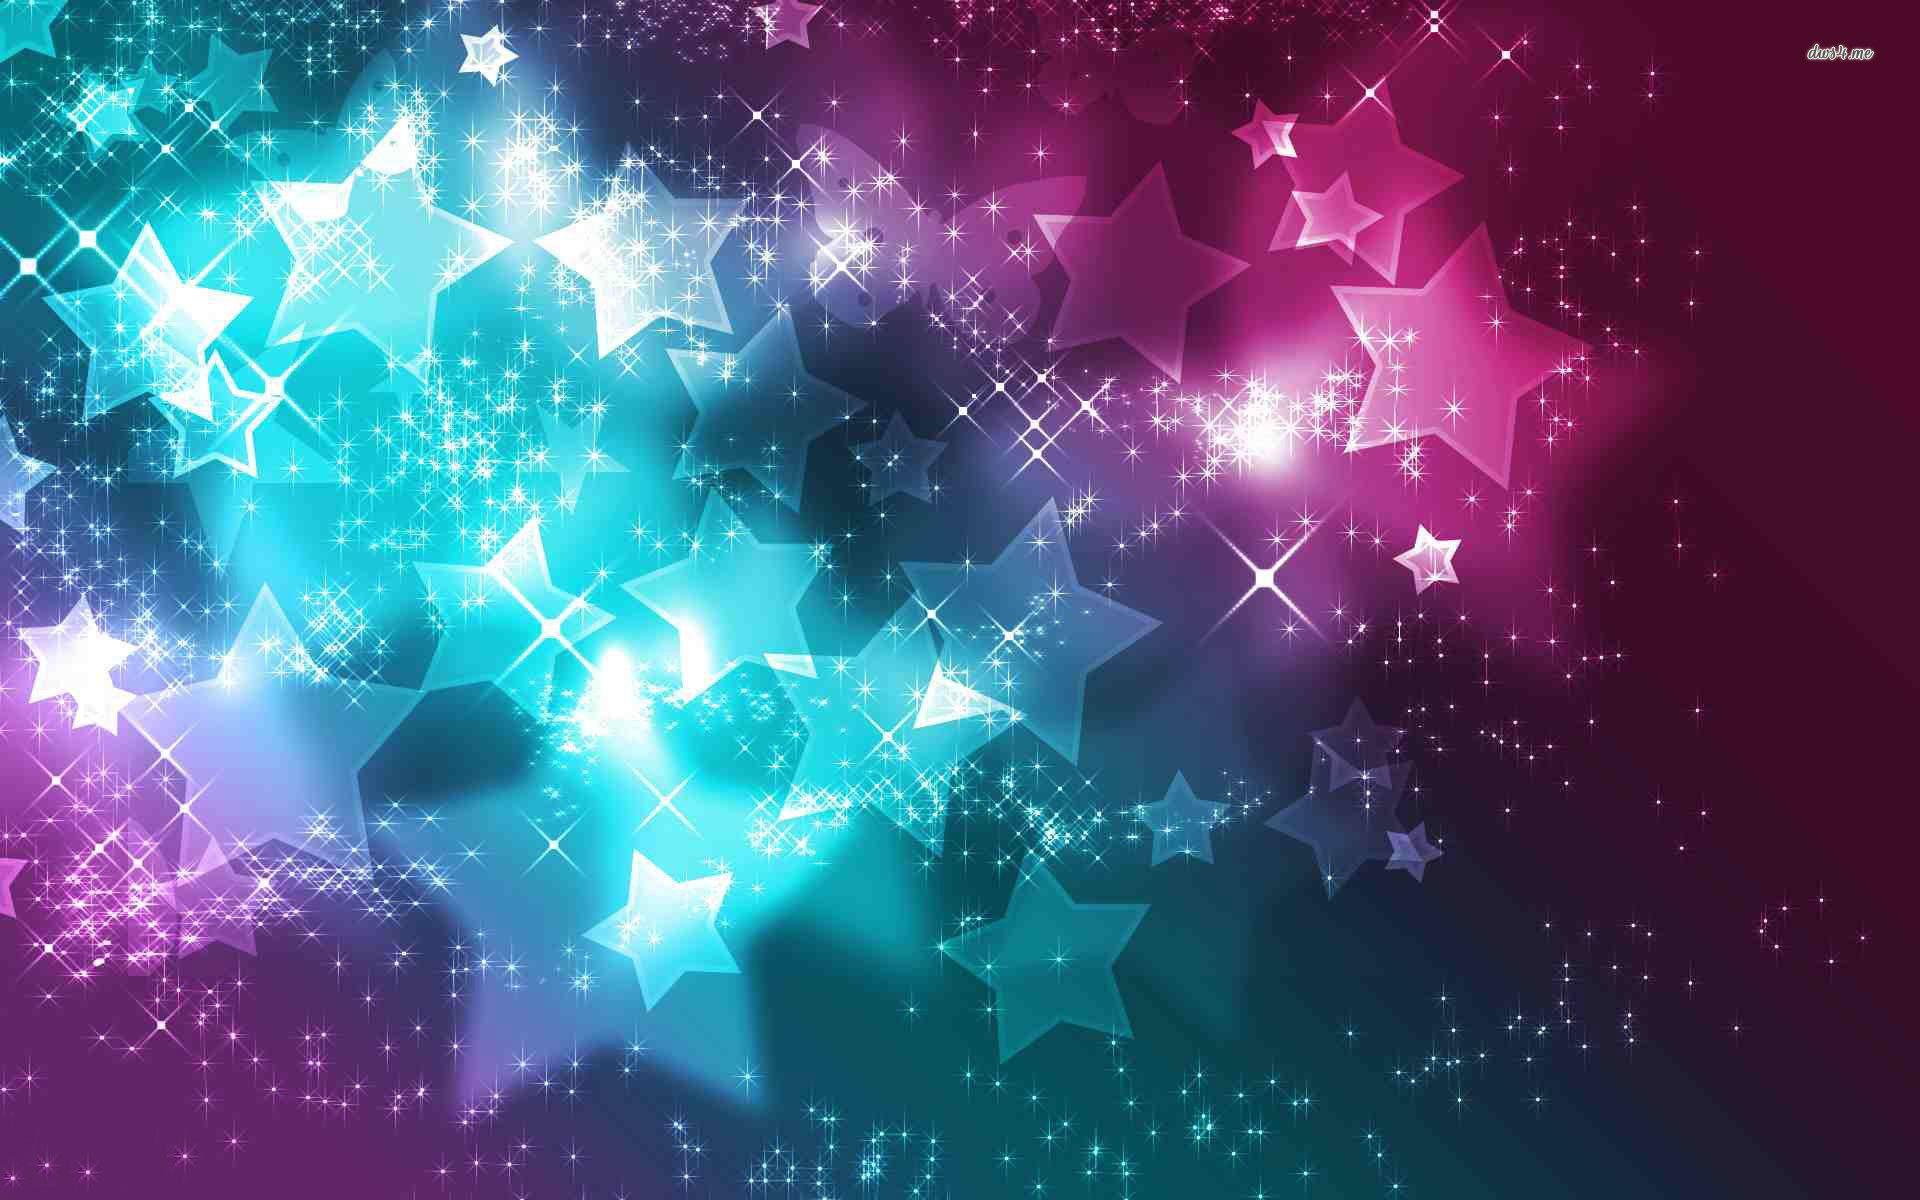 Sparkling Stars and Butterflies wallpaper wallpaper - #